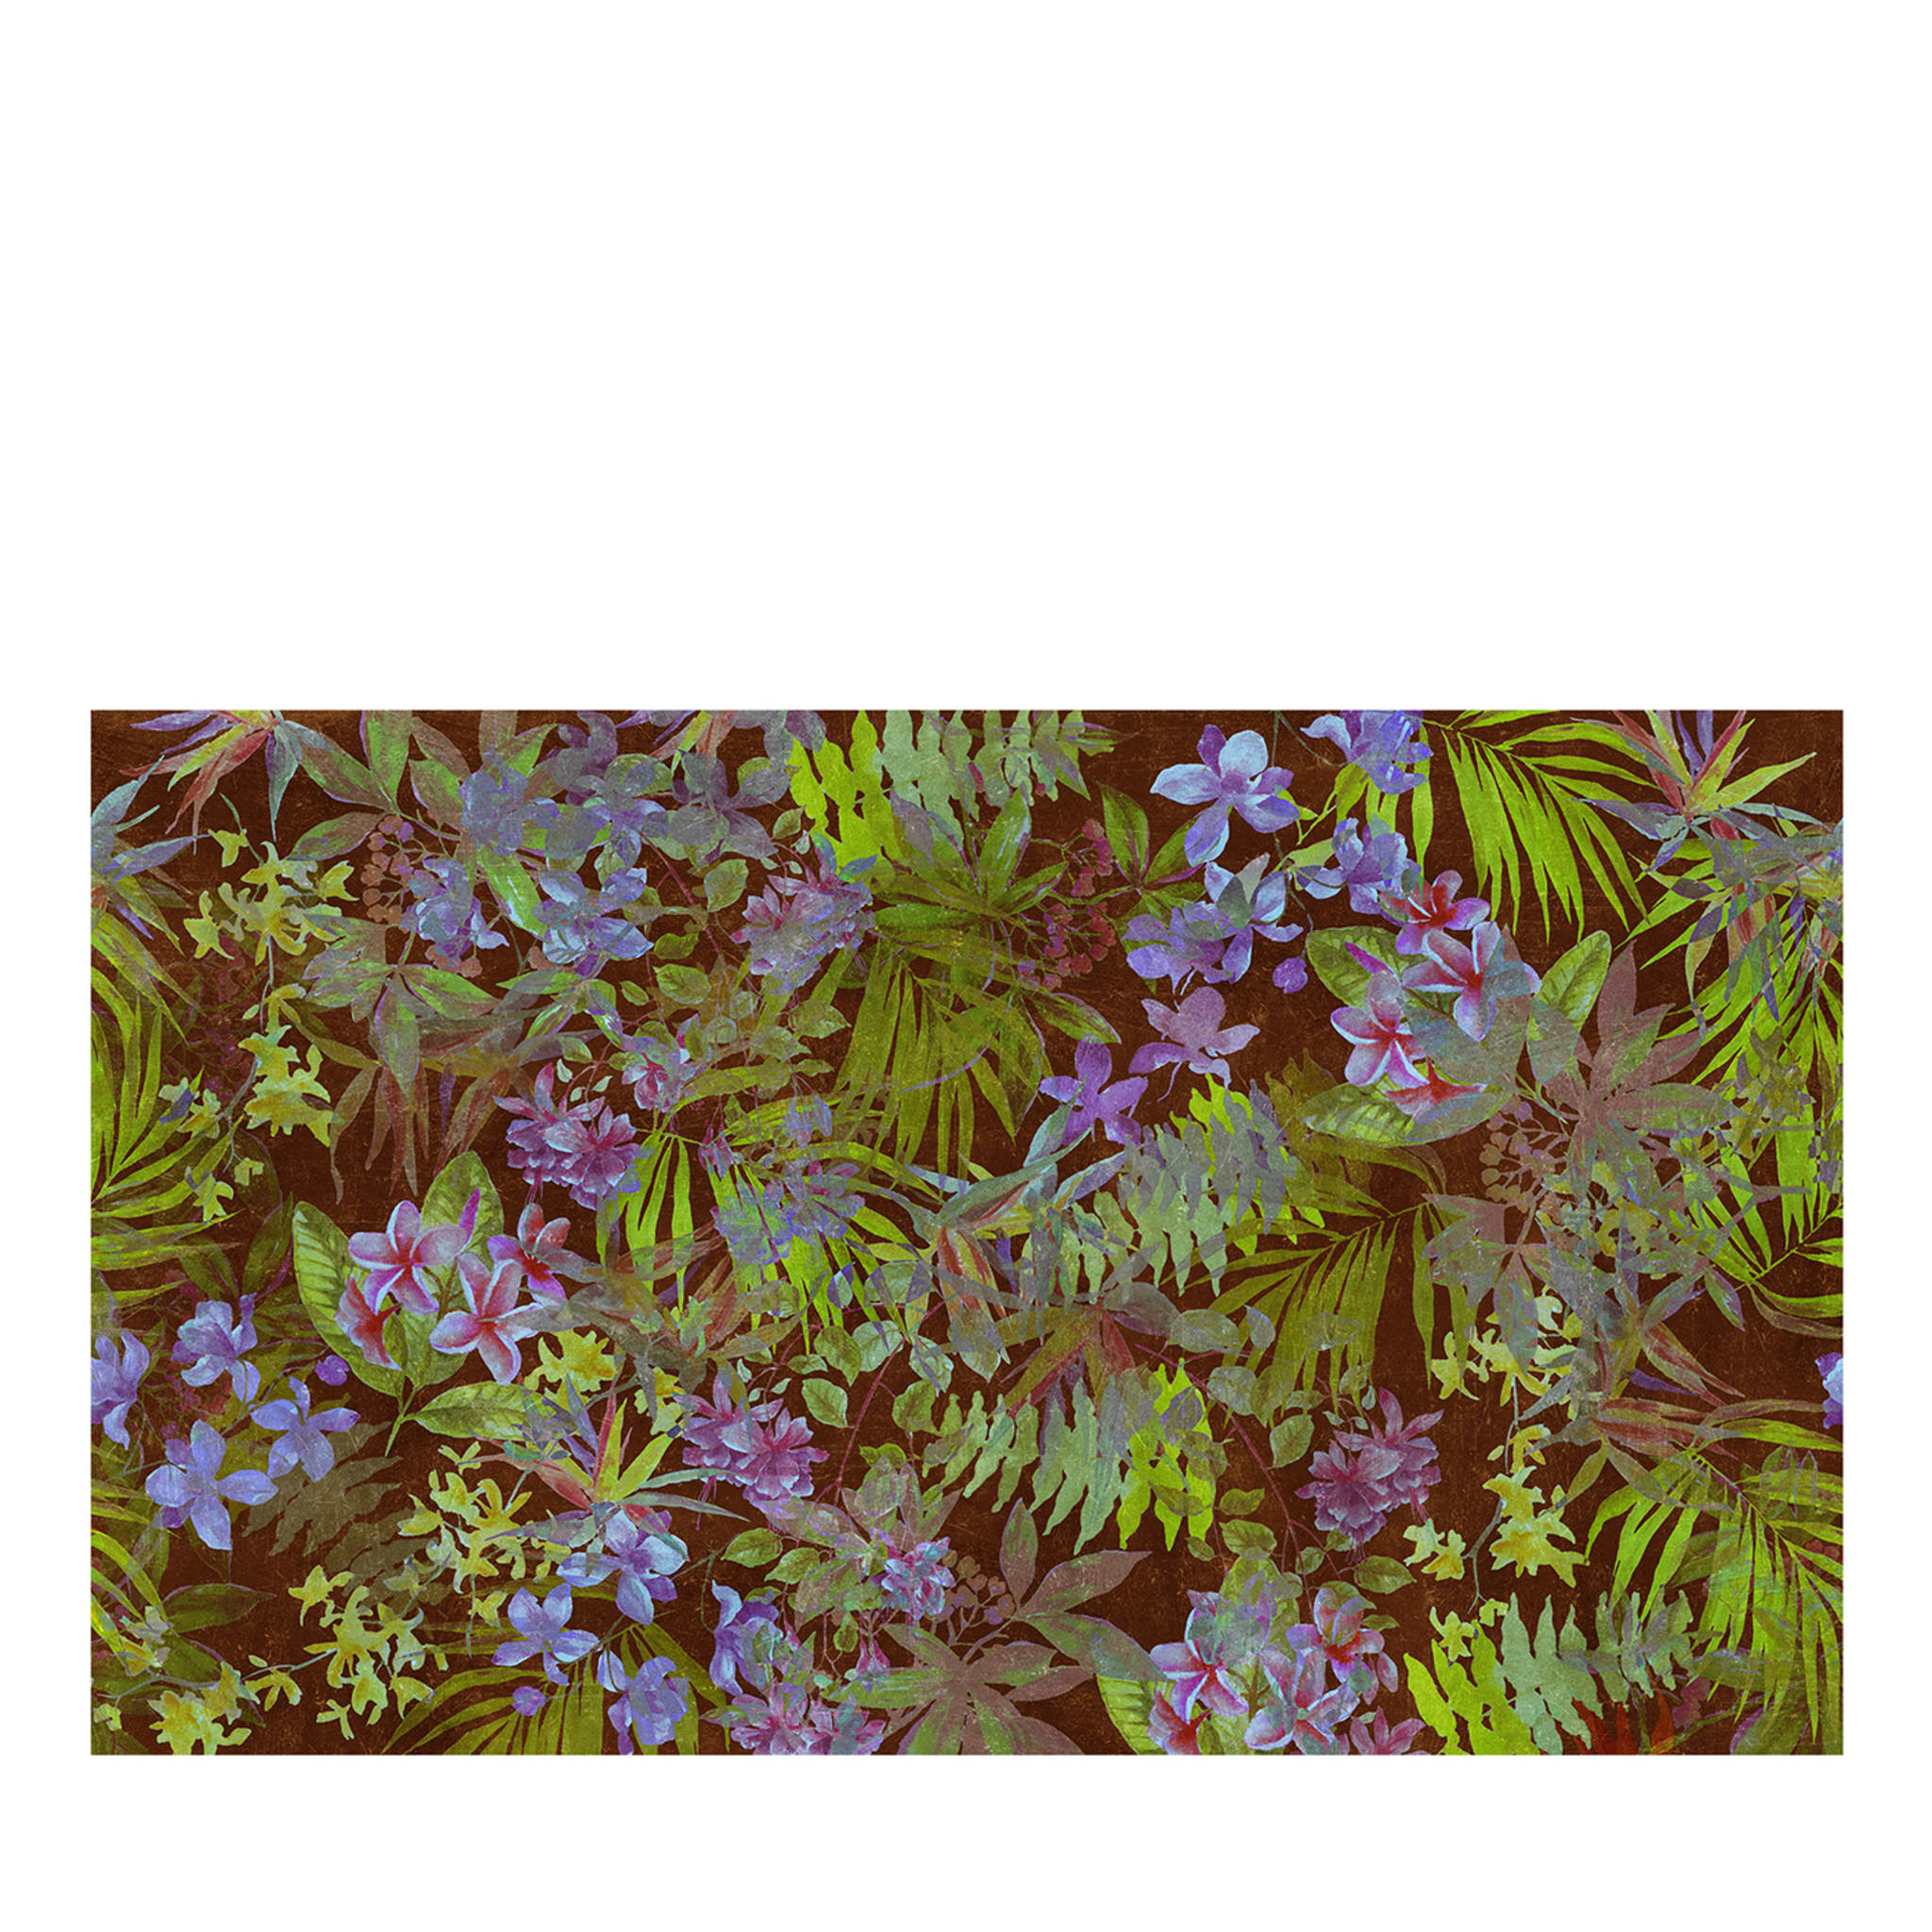 Fond d'écran Rainforest by Alice carmen Goga#2 - Vue principale